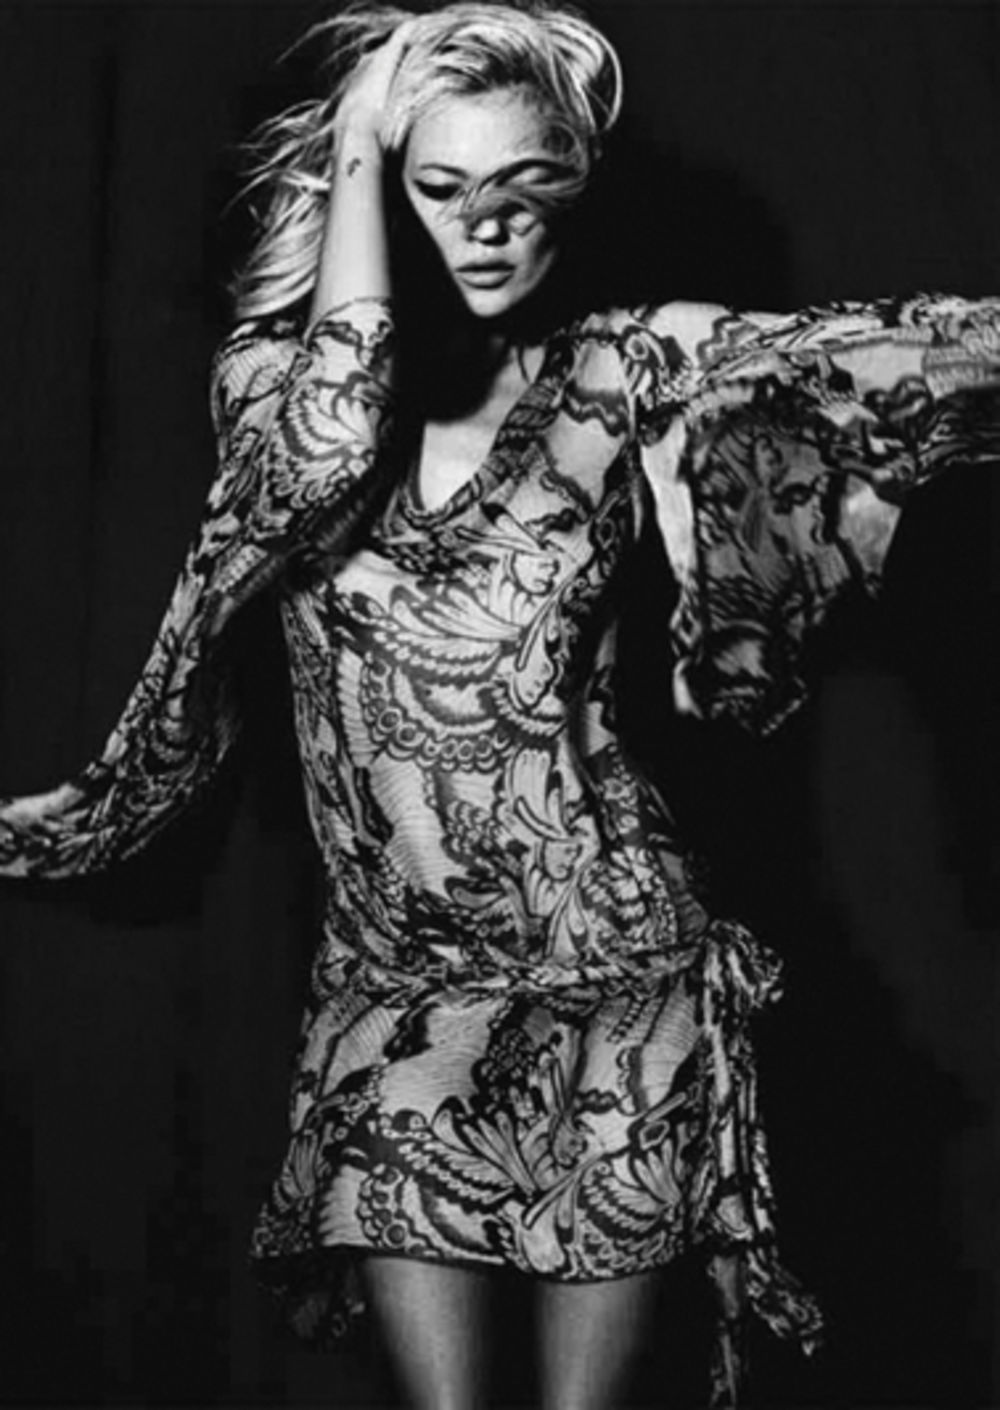 Prepoznatljiv, uvek atraktivan i zavodljiv modni stil doprineo je tome da magazin Vogue čuvenu britansku manekenku Kejt Mos proglasi najbolje odevenom ženom poslednje decenije. Ova plavokosa lepotica postala je prava modna ikona, a njene odevne kombinacije pos